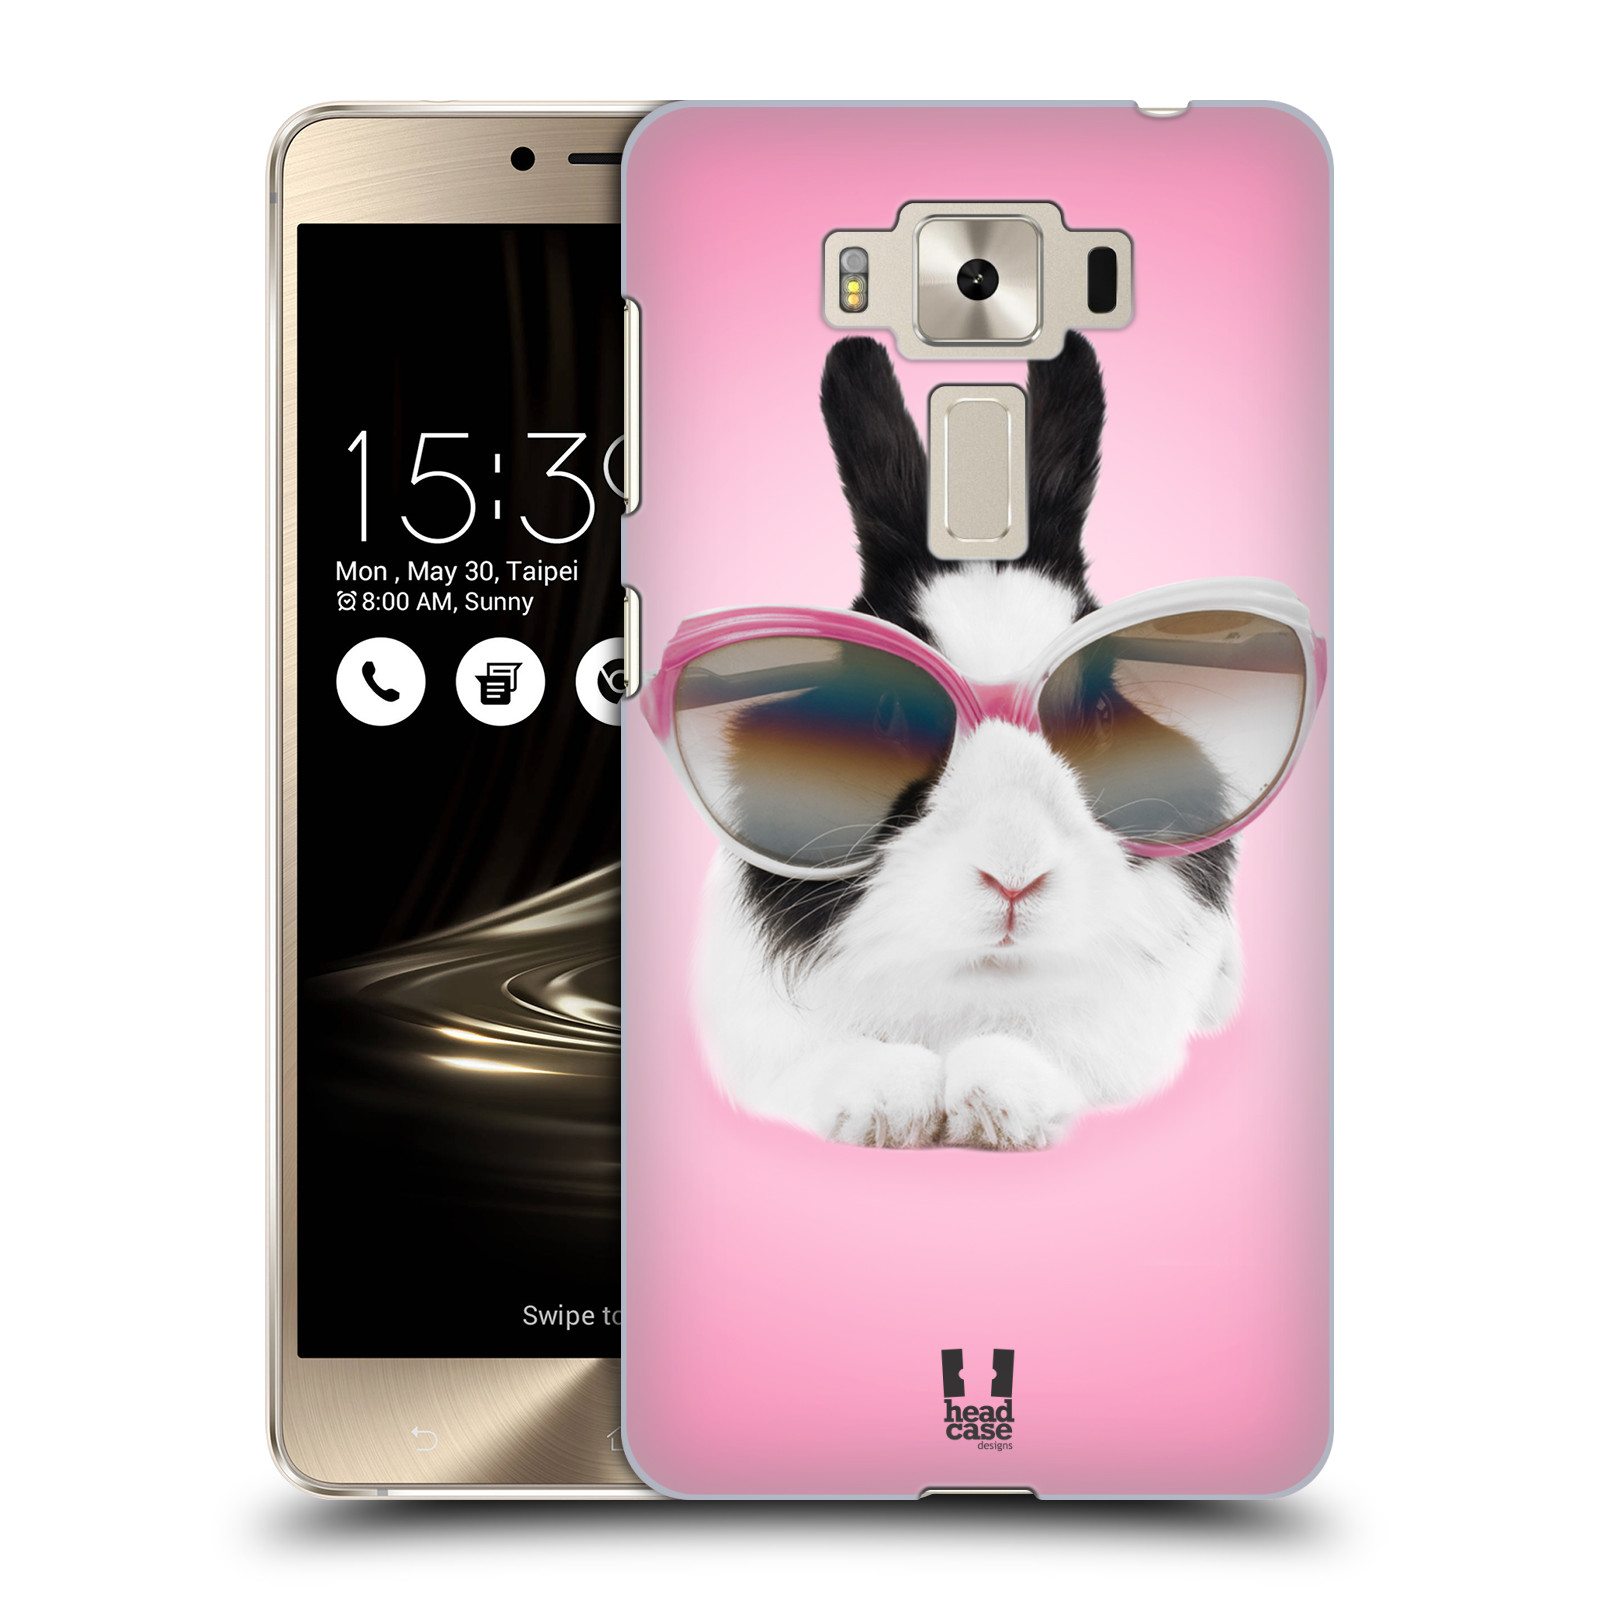 HEAD CASE plastový obal na mobil Asus Zenfone 3 DELUXE ZS550KL vzor Legrační zvířátka roztomilý králíček s brýlemi růžová